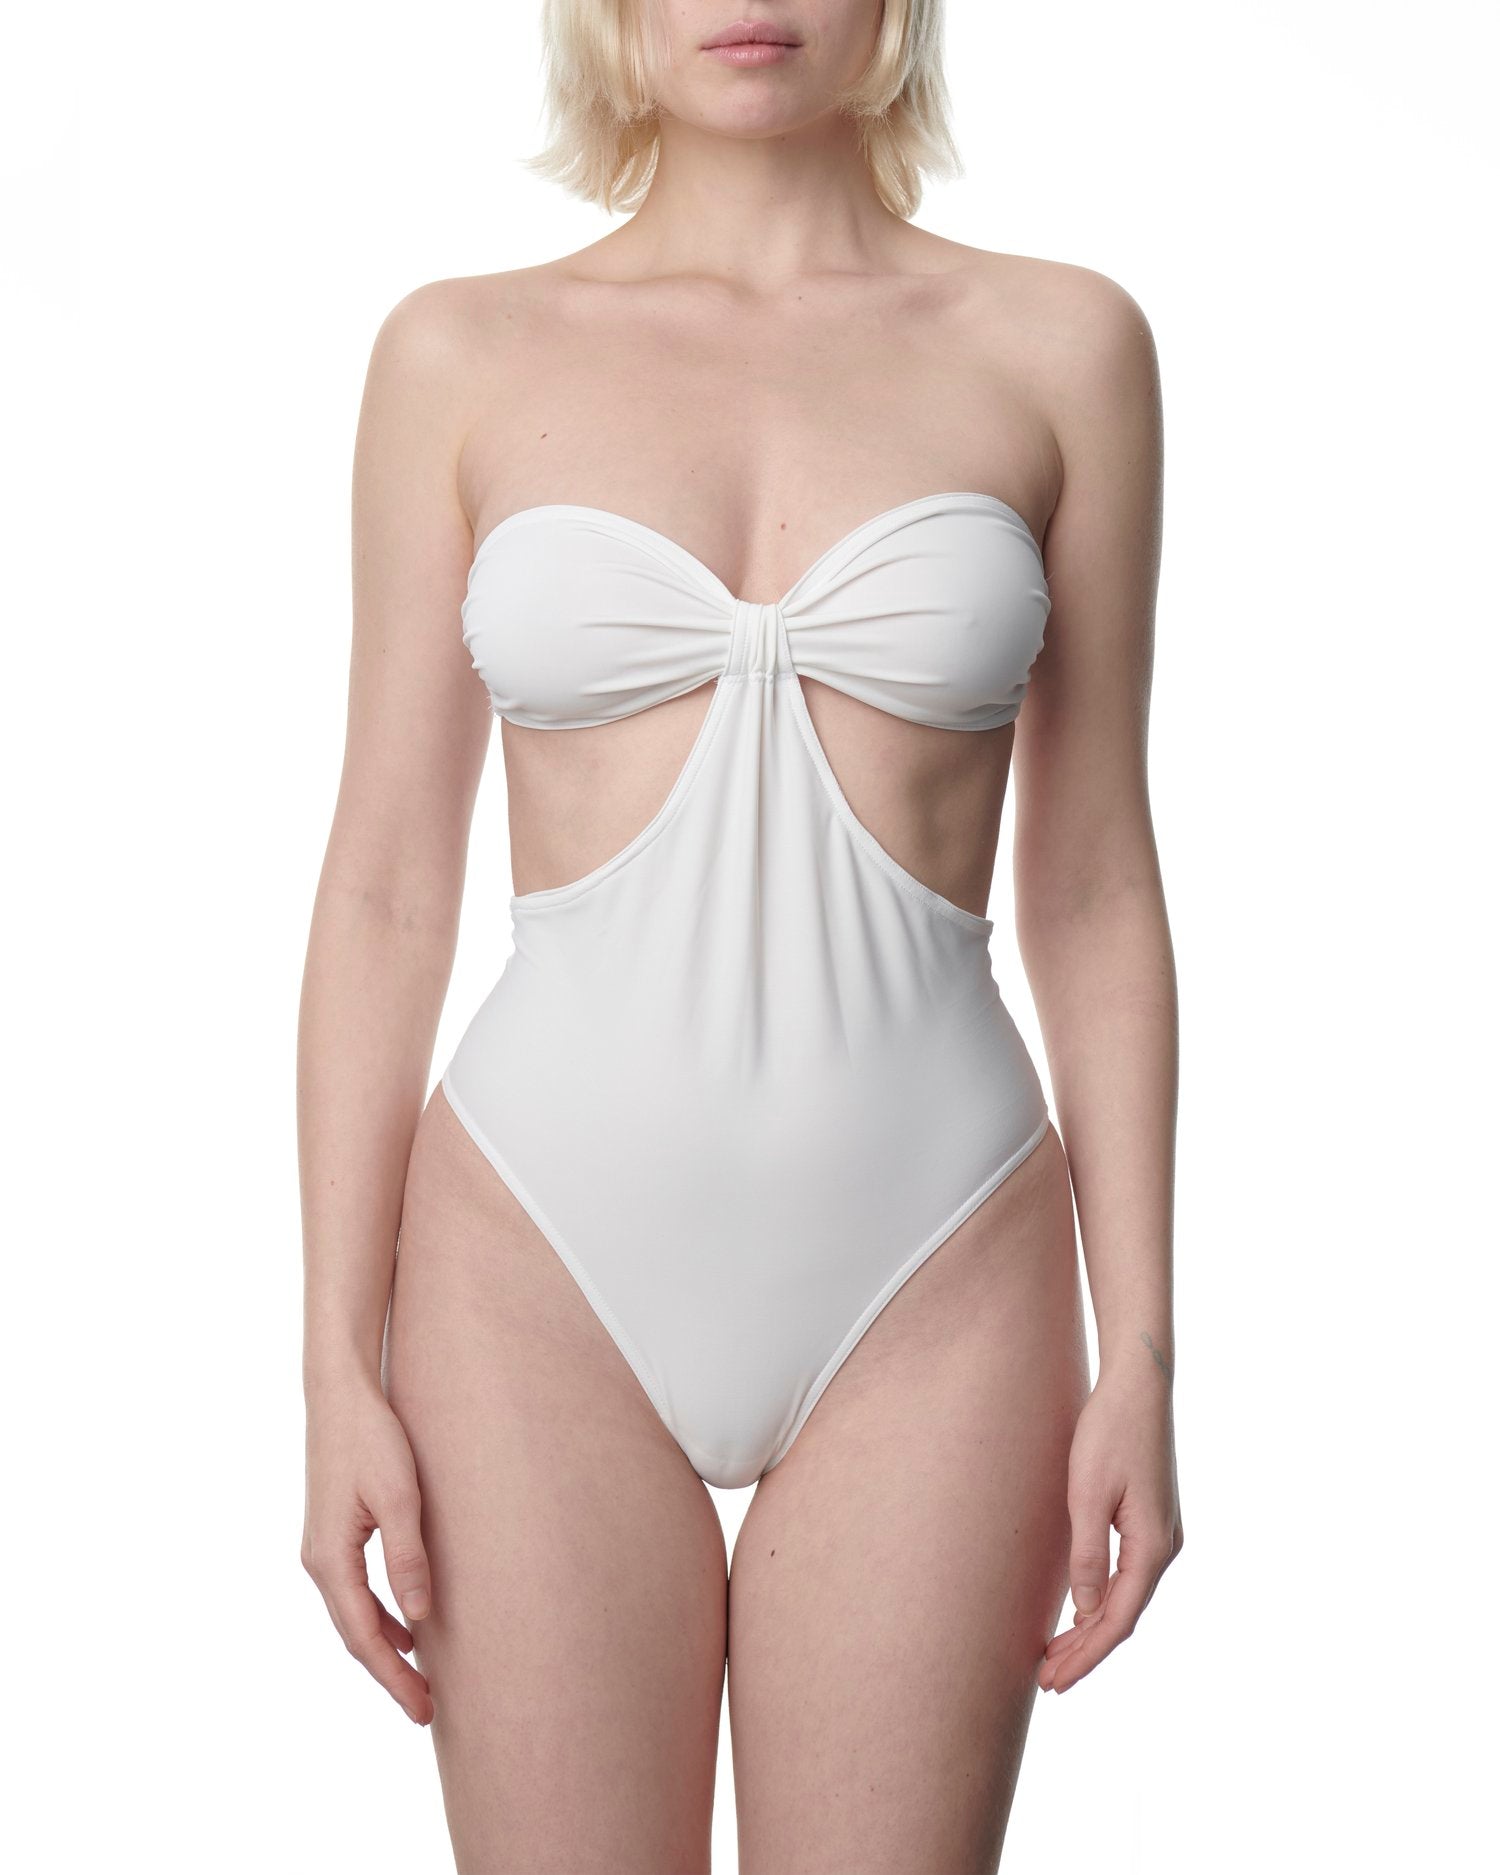 Biarritz swimsuit by DU CIEL - white